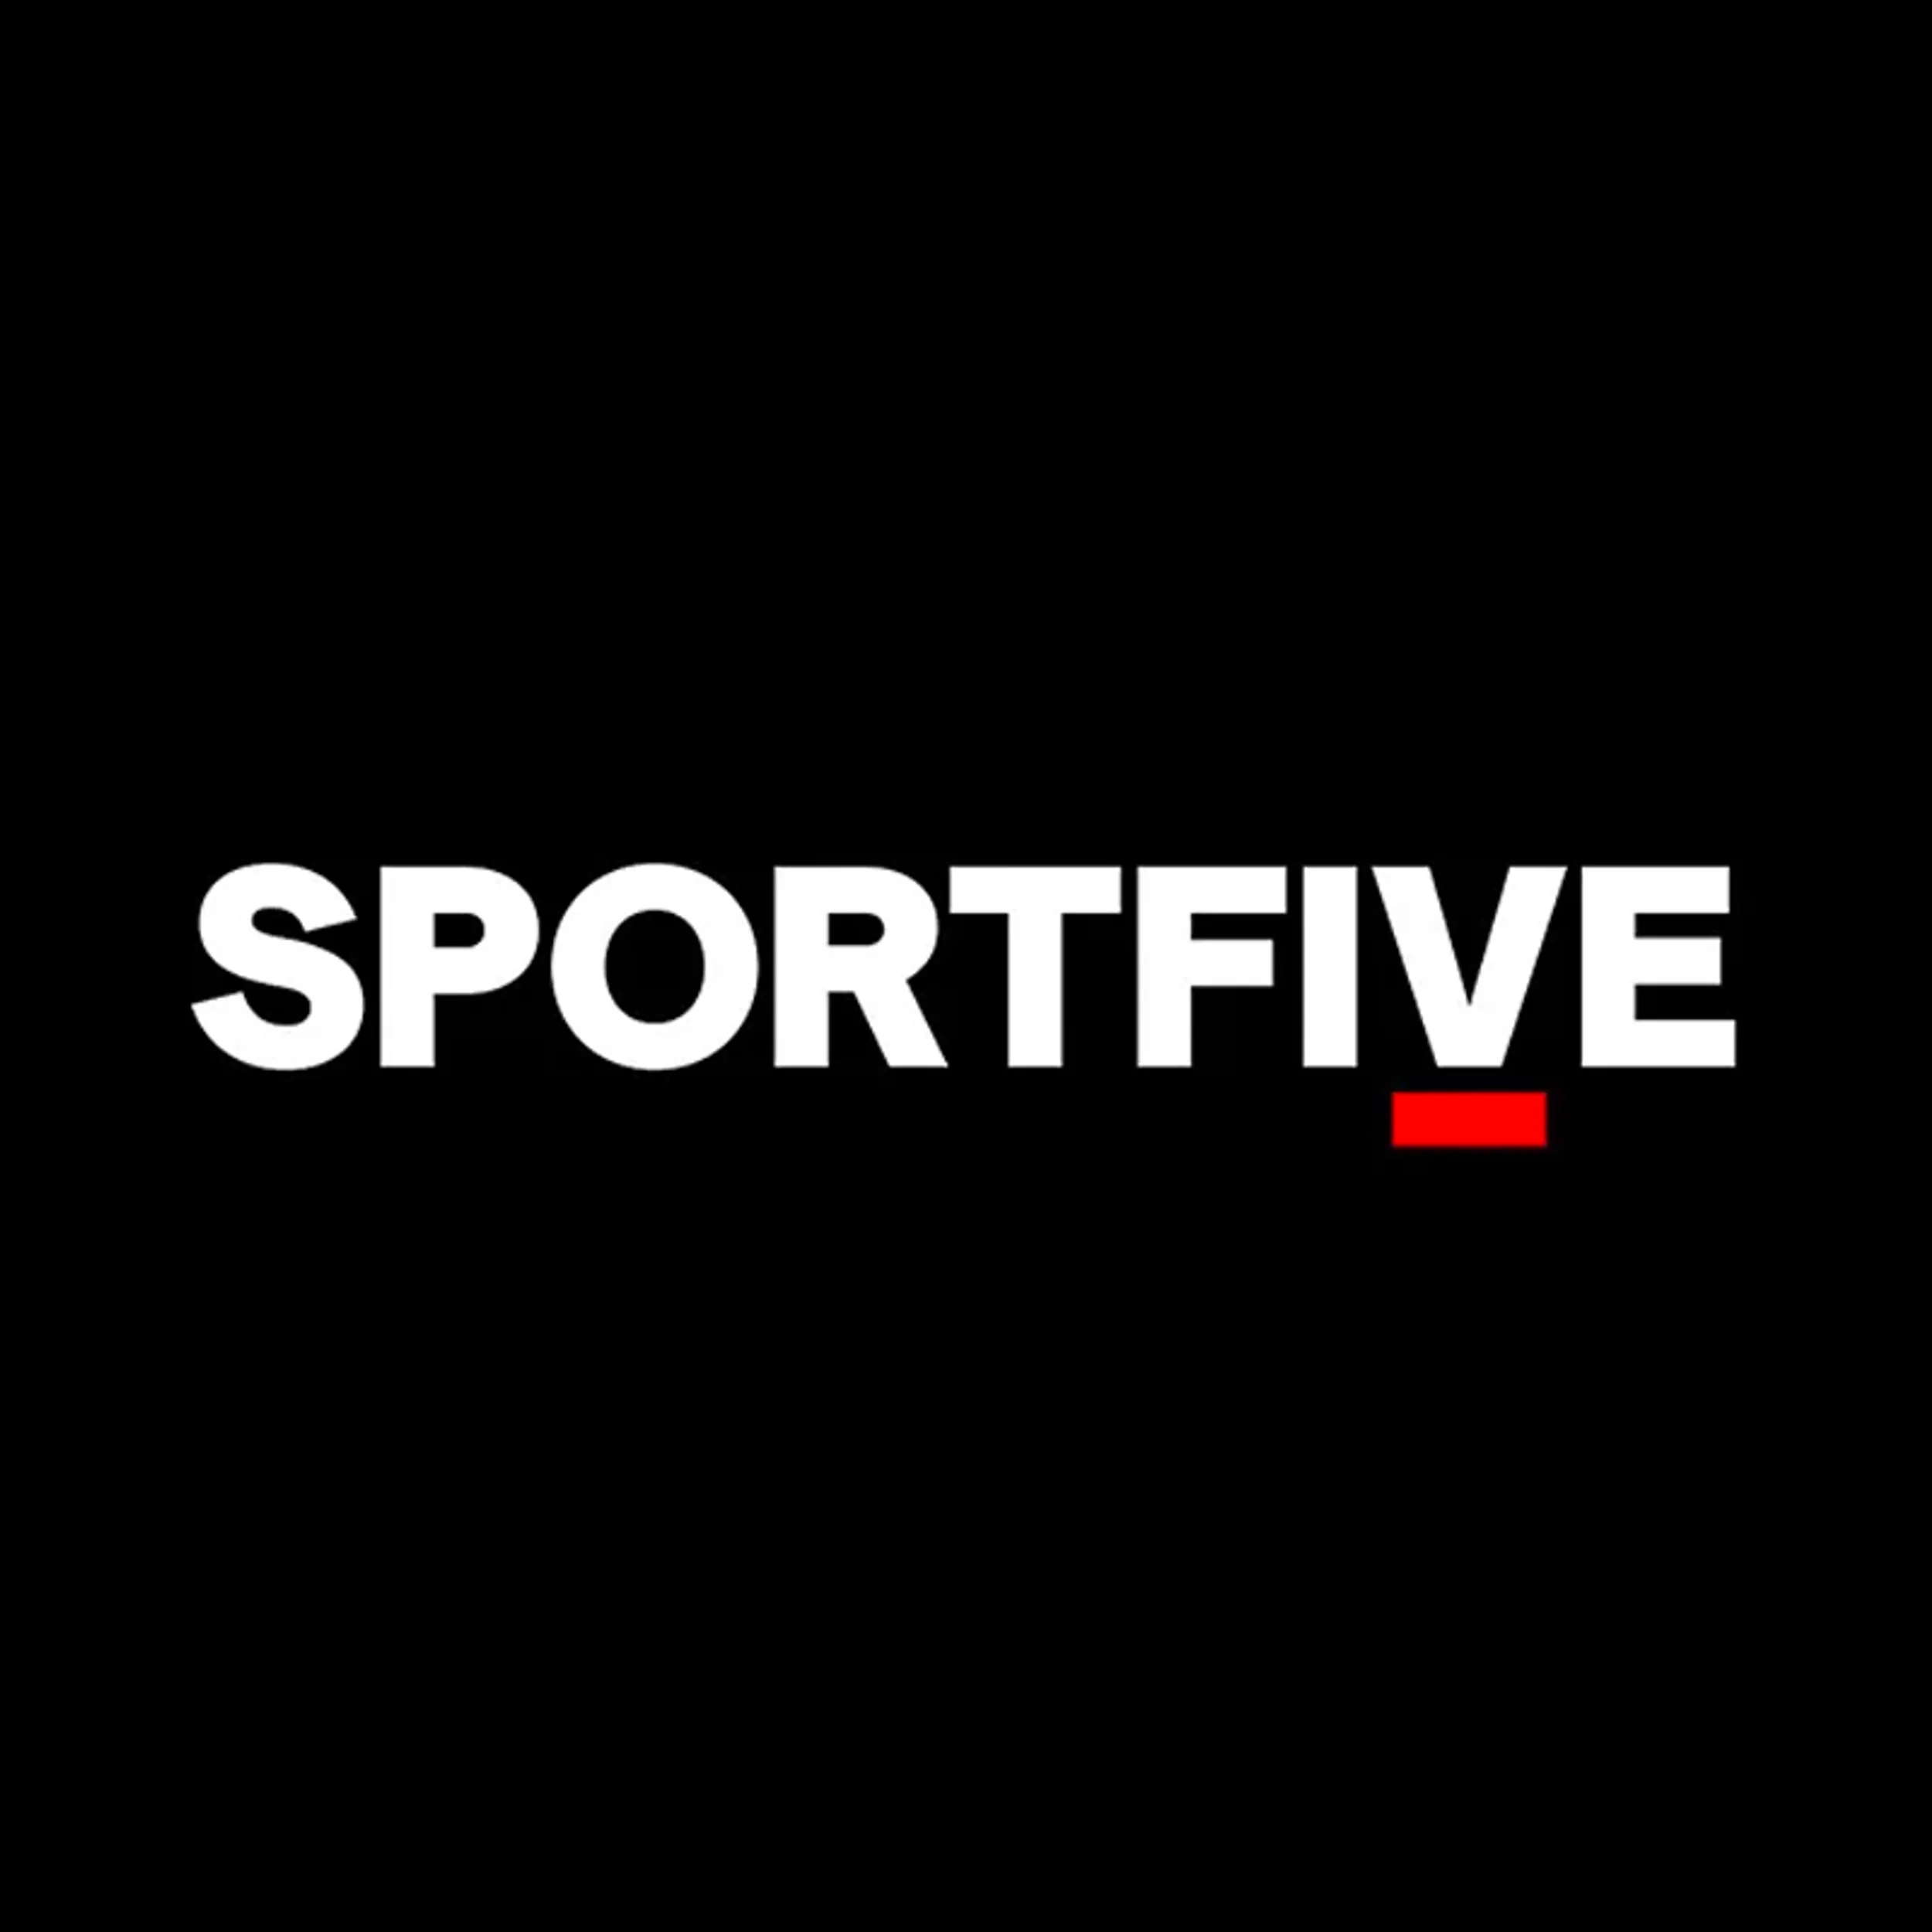 Sportfive logo b